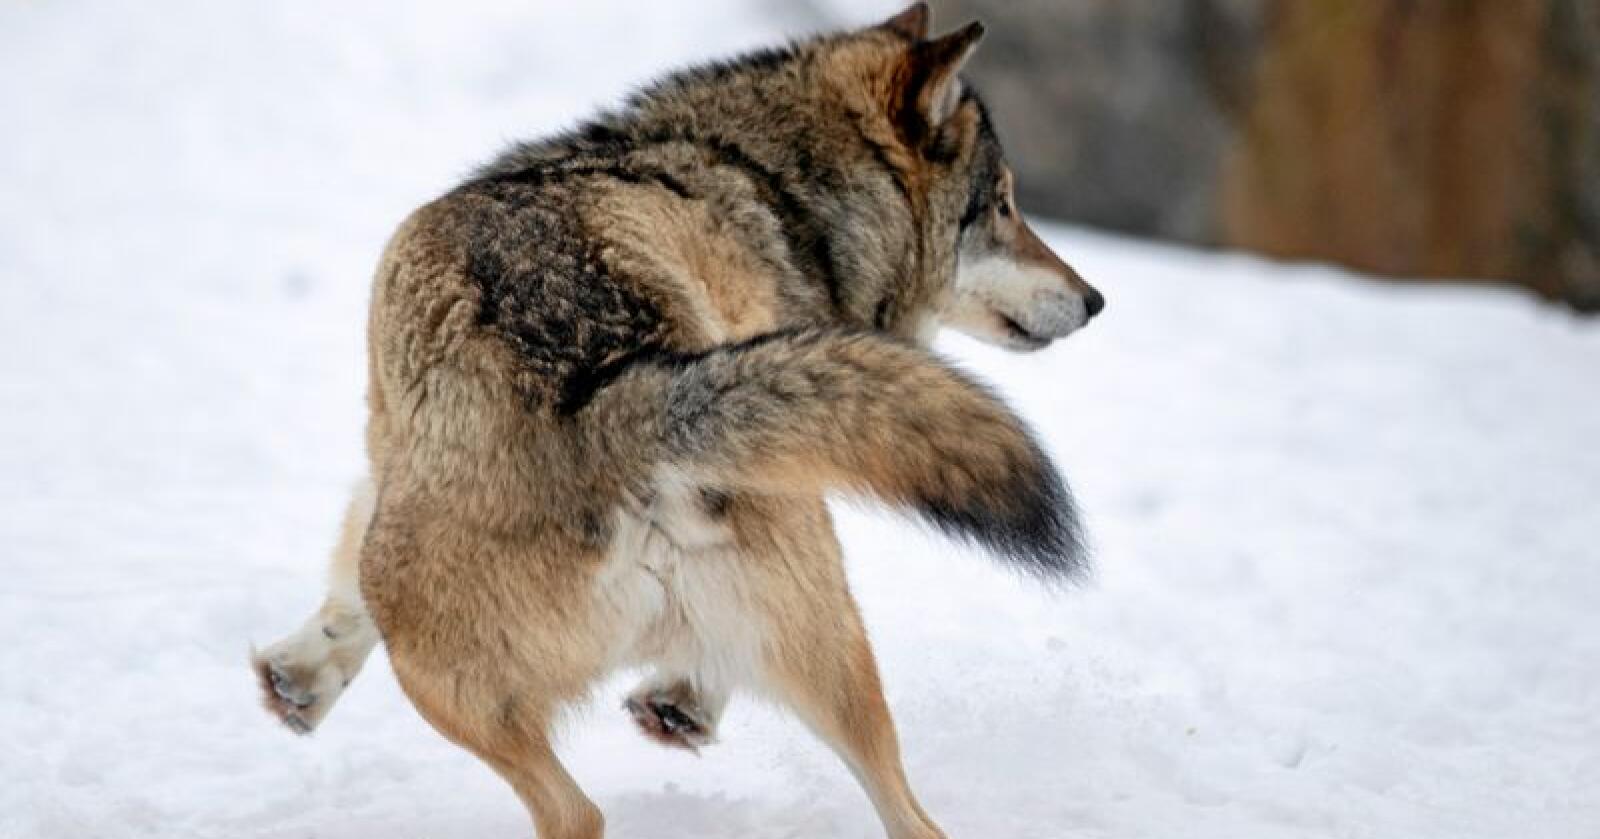 Sporing: Uten snø finner man ingen spor og uten spor finner man ikke DNA, skriver innsenderne.  Denne ulven holder til på Langedrag. Foto: Heiko Junge / NTB scanpix